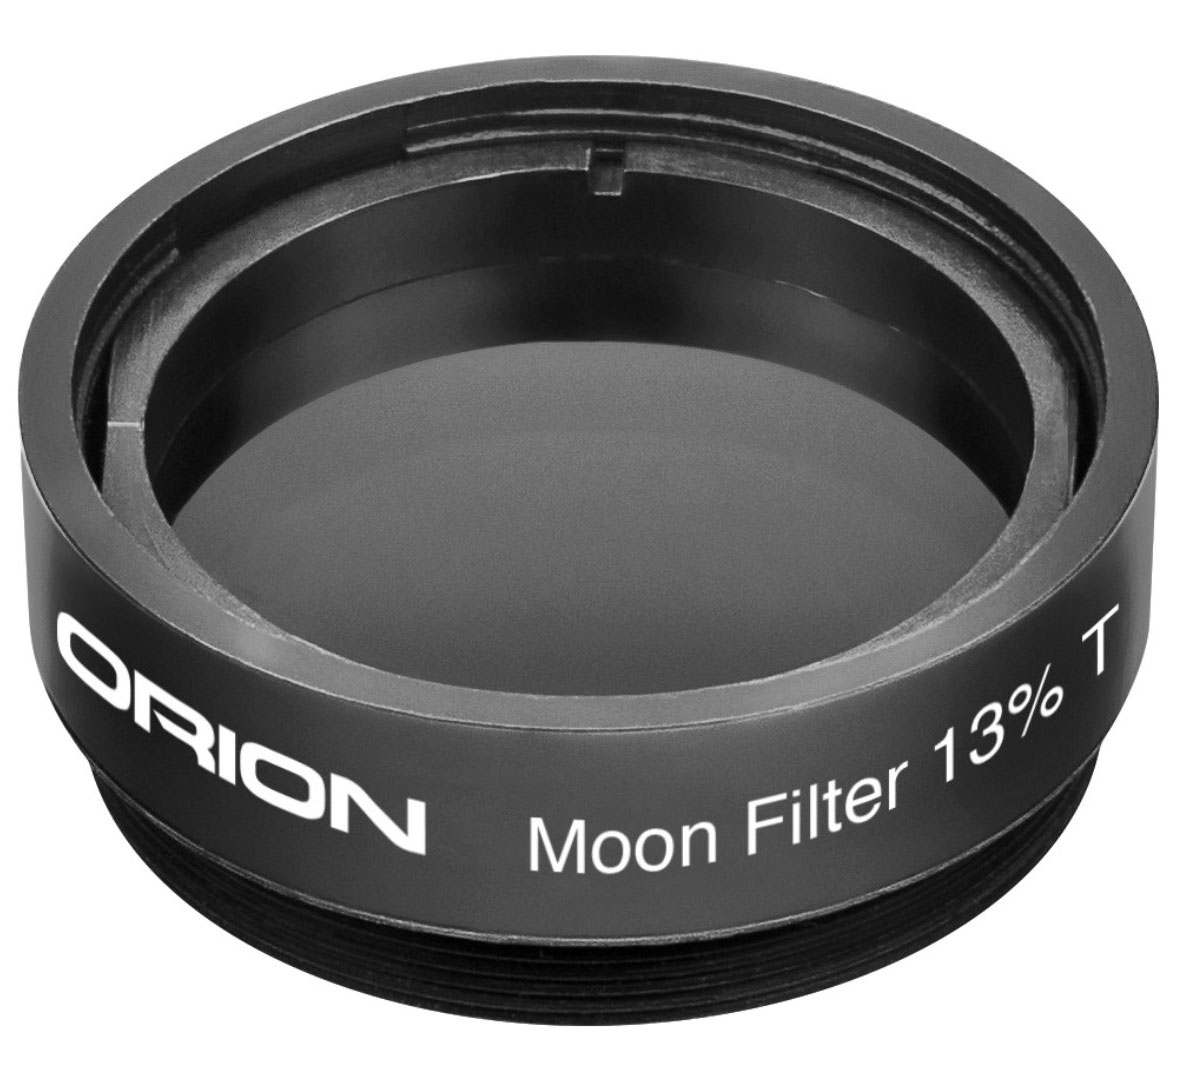 Лунный фильтр Orion, 13%, 1,25